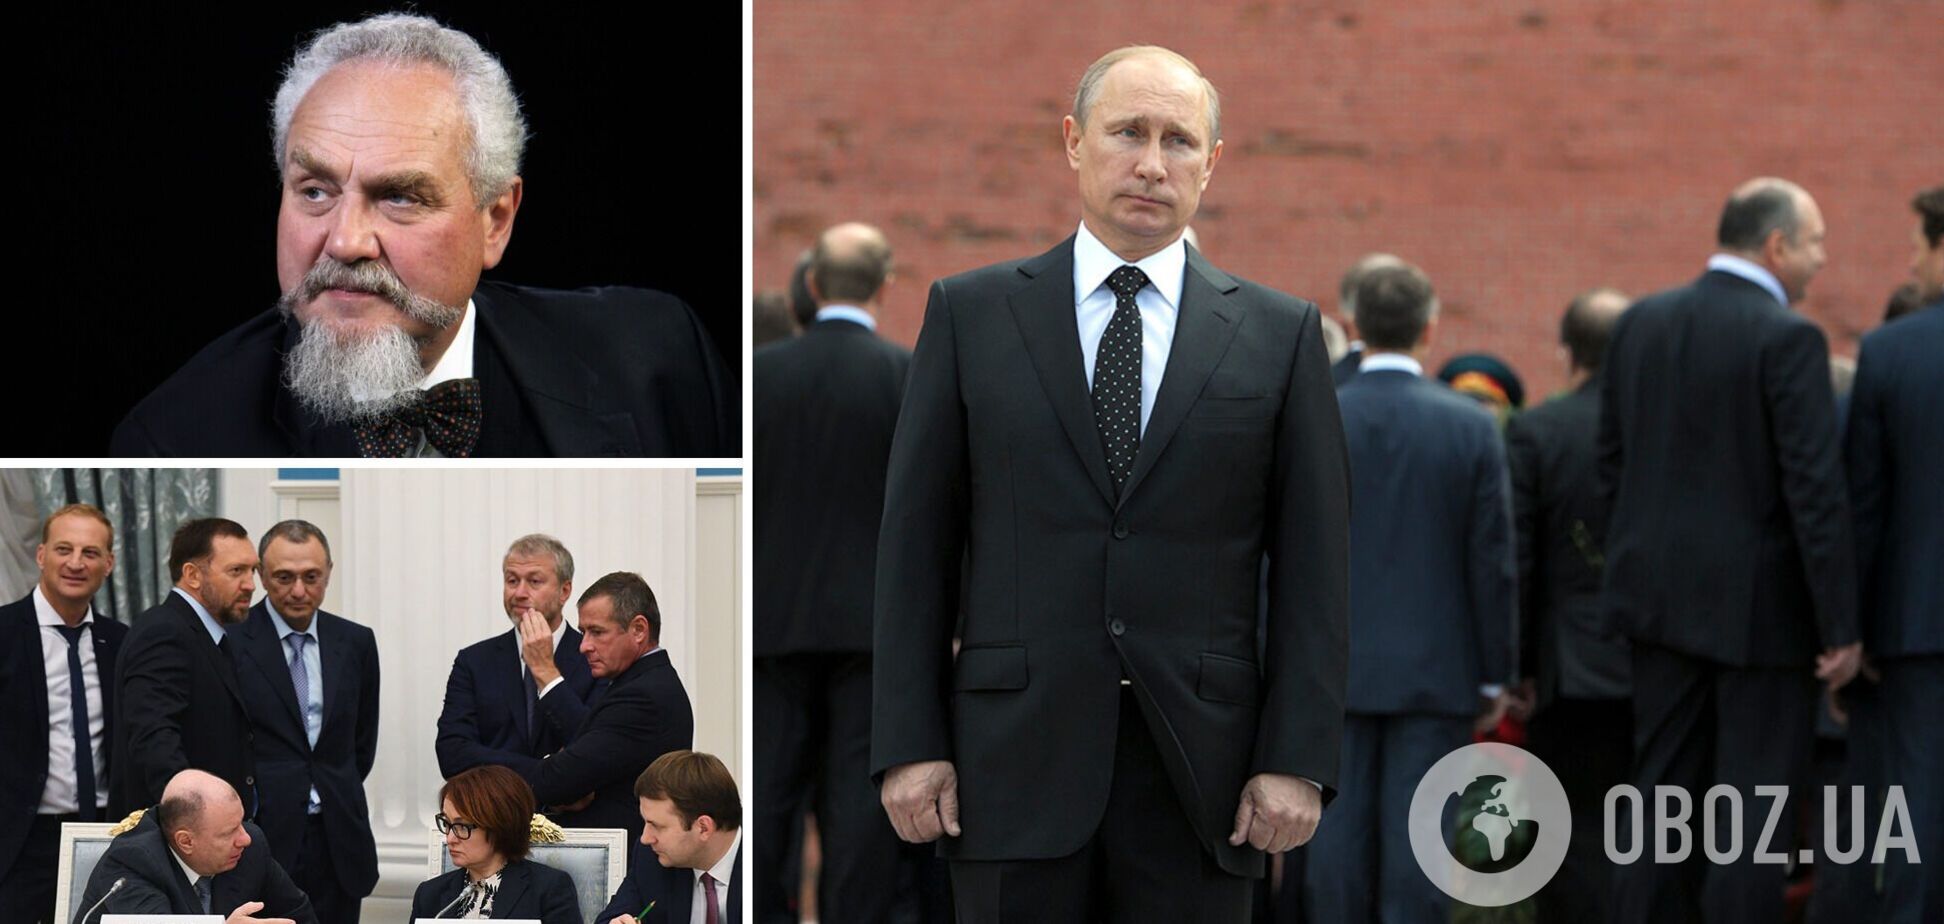 Зубов: 'Зачем нам Путин?' – спросят олигархи и заменят его. Интервью